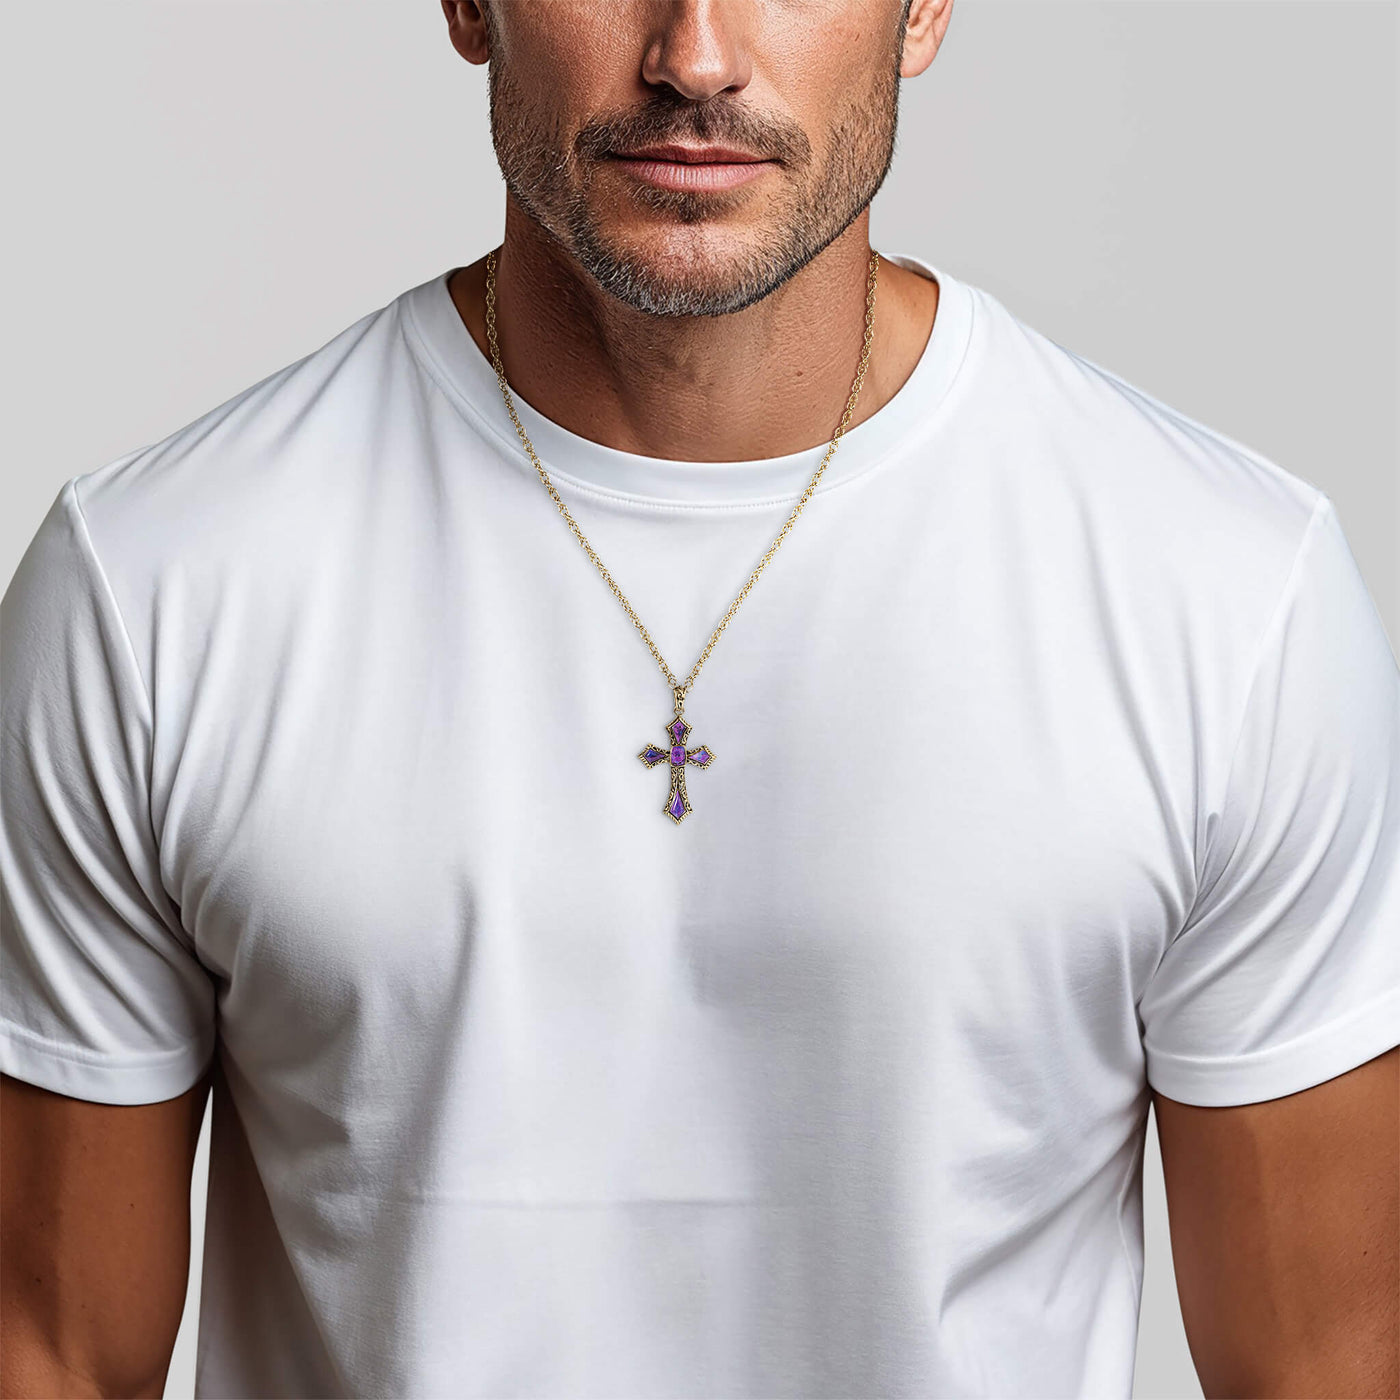 Man in white t-shirt wearing purple cross pendant